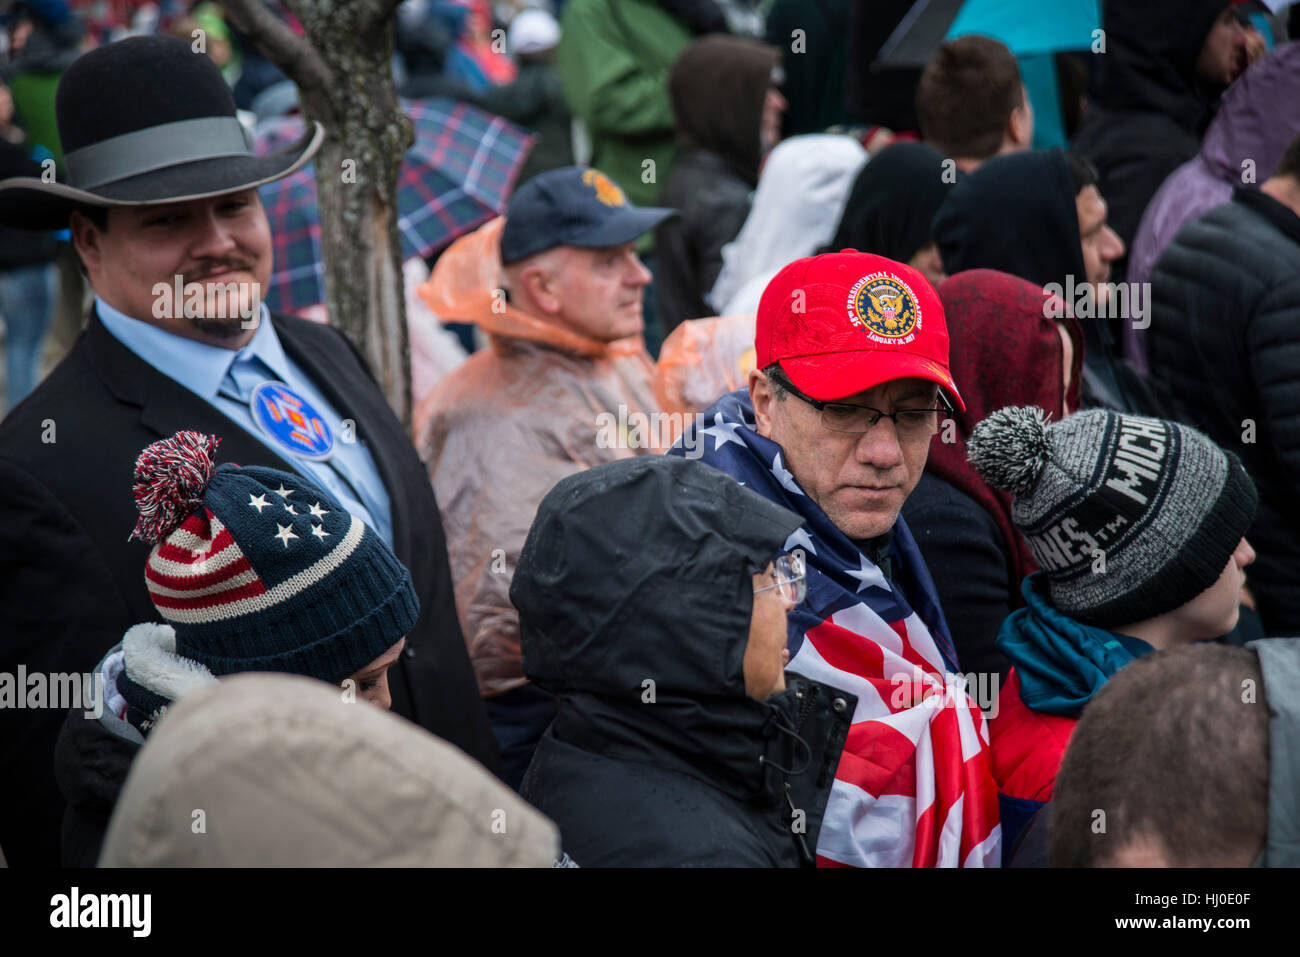 Donald Trump, non blanc, soutient le gentleman américain autochtone tout au long du Montana, dans une foule de personnes en attente de début de défilé inaugural le long de l'avenue Pennsylvania, Trump est devenu le 45ème président des États-Unis. 20 janvier 2017 à Washington, DC Banque D'Images